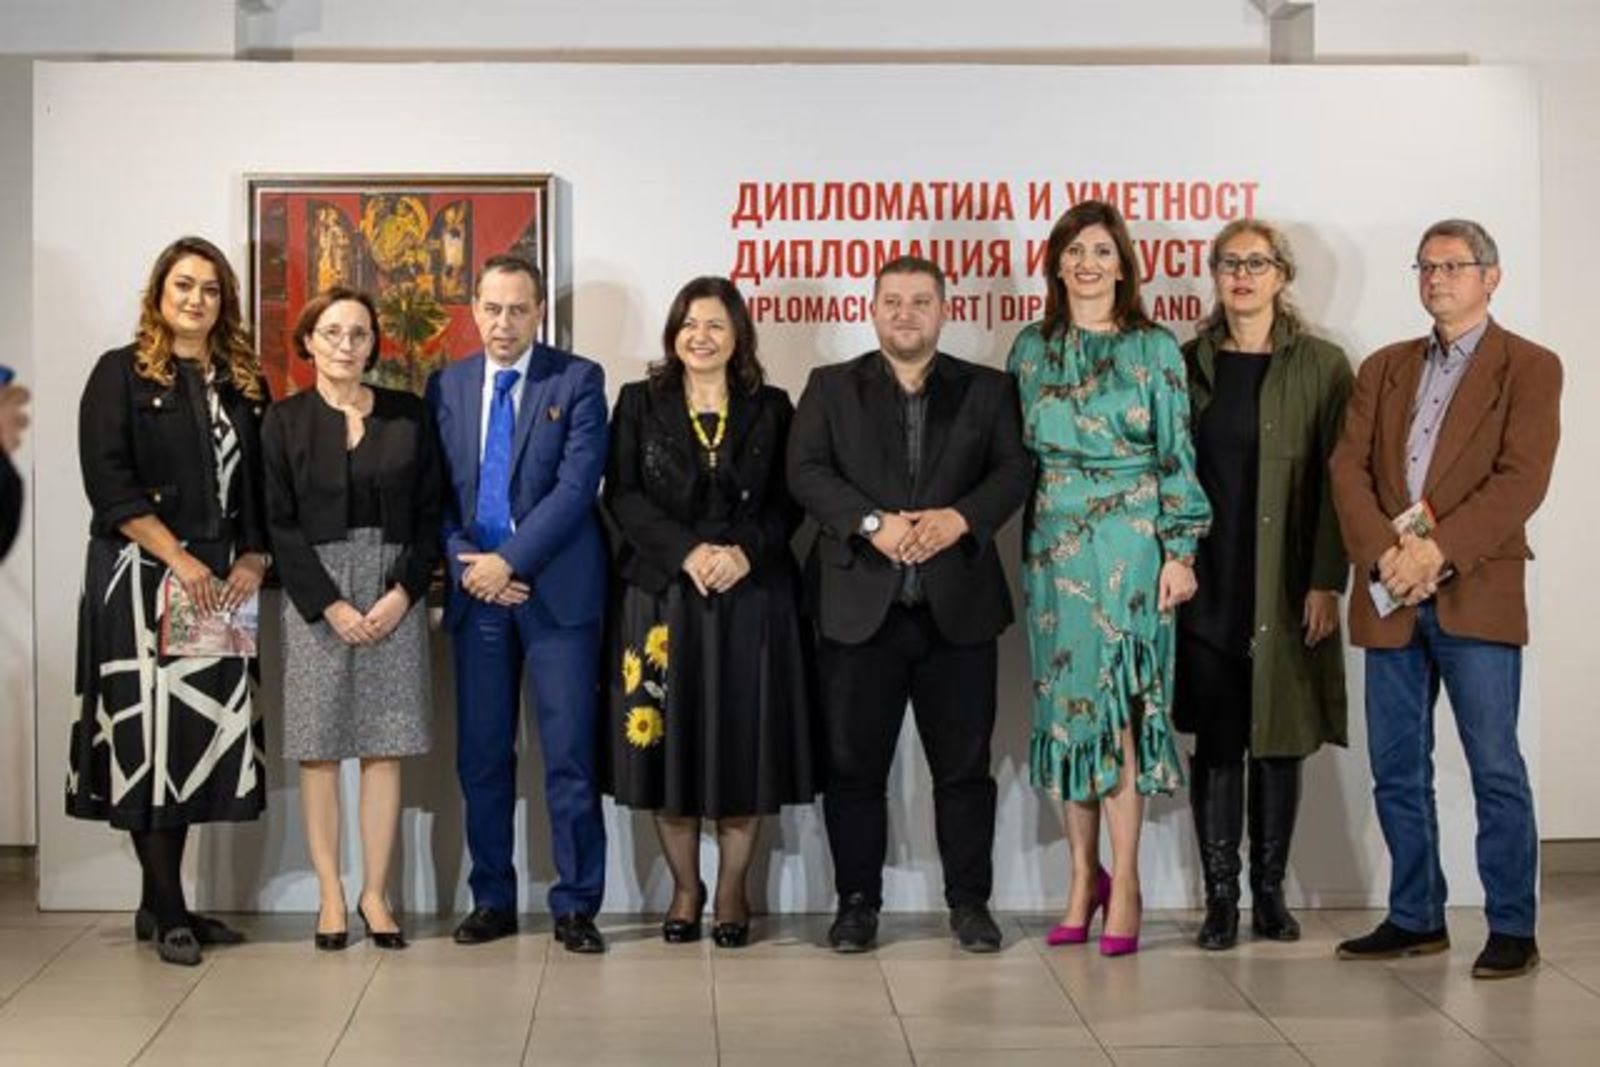 Представителната изложба "Дипломация и изкуство" се откри в Националната галерия в Скопие